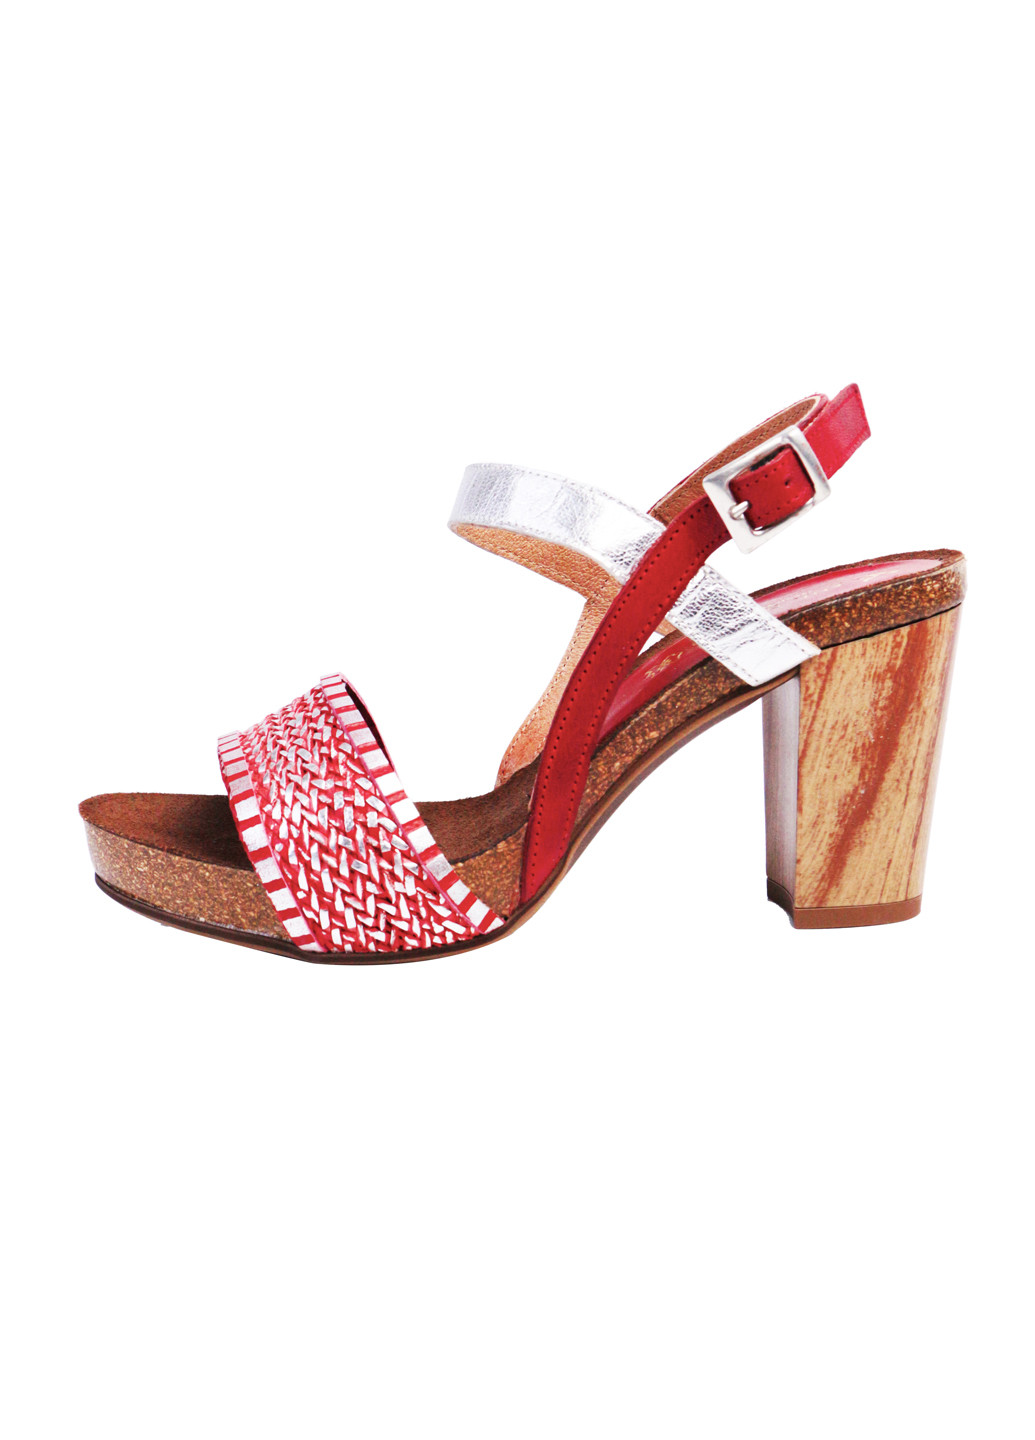 Комбинированные босоножки женские натуральная кожа на широком каблуке 39 красно-серебристый a&d Lidl